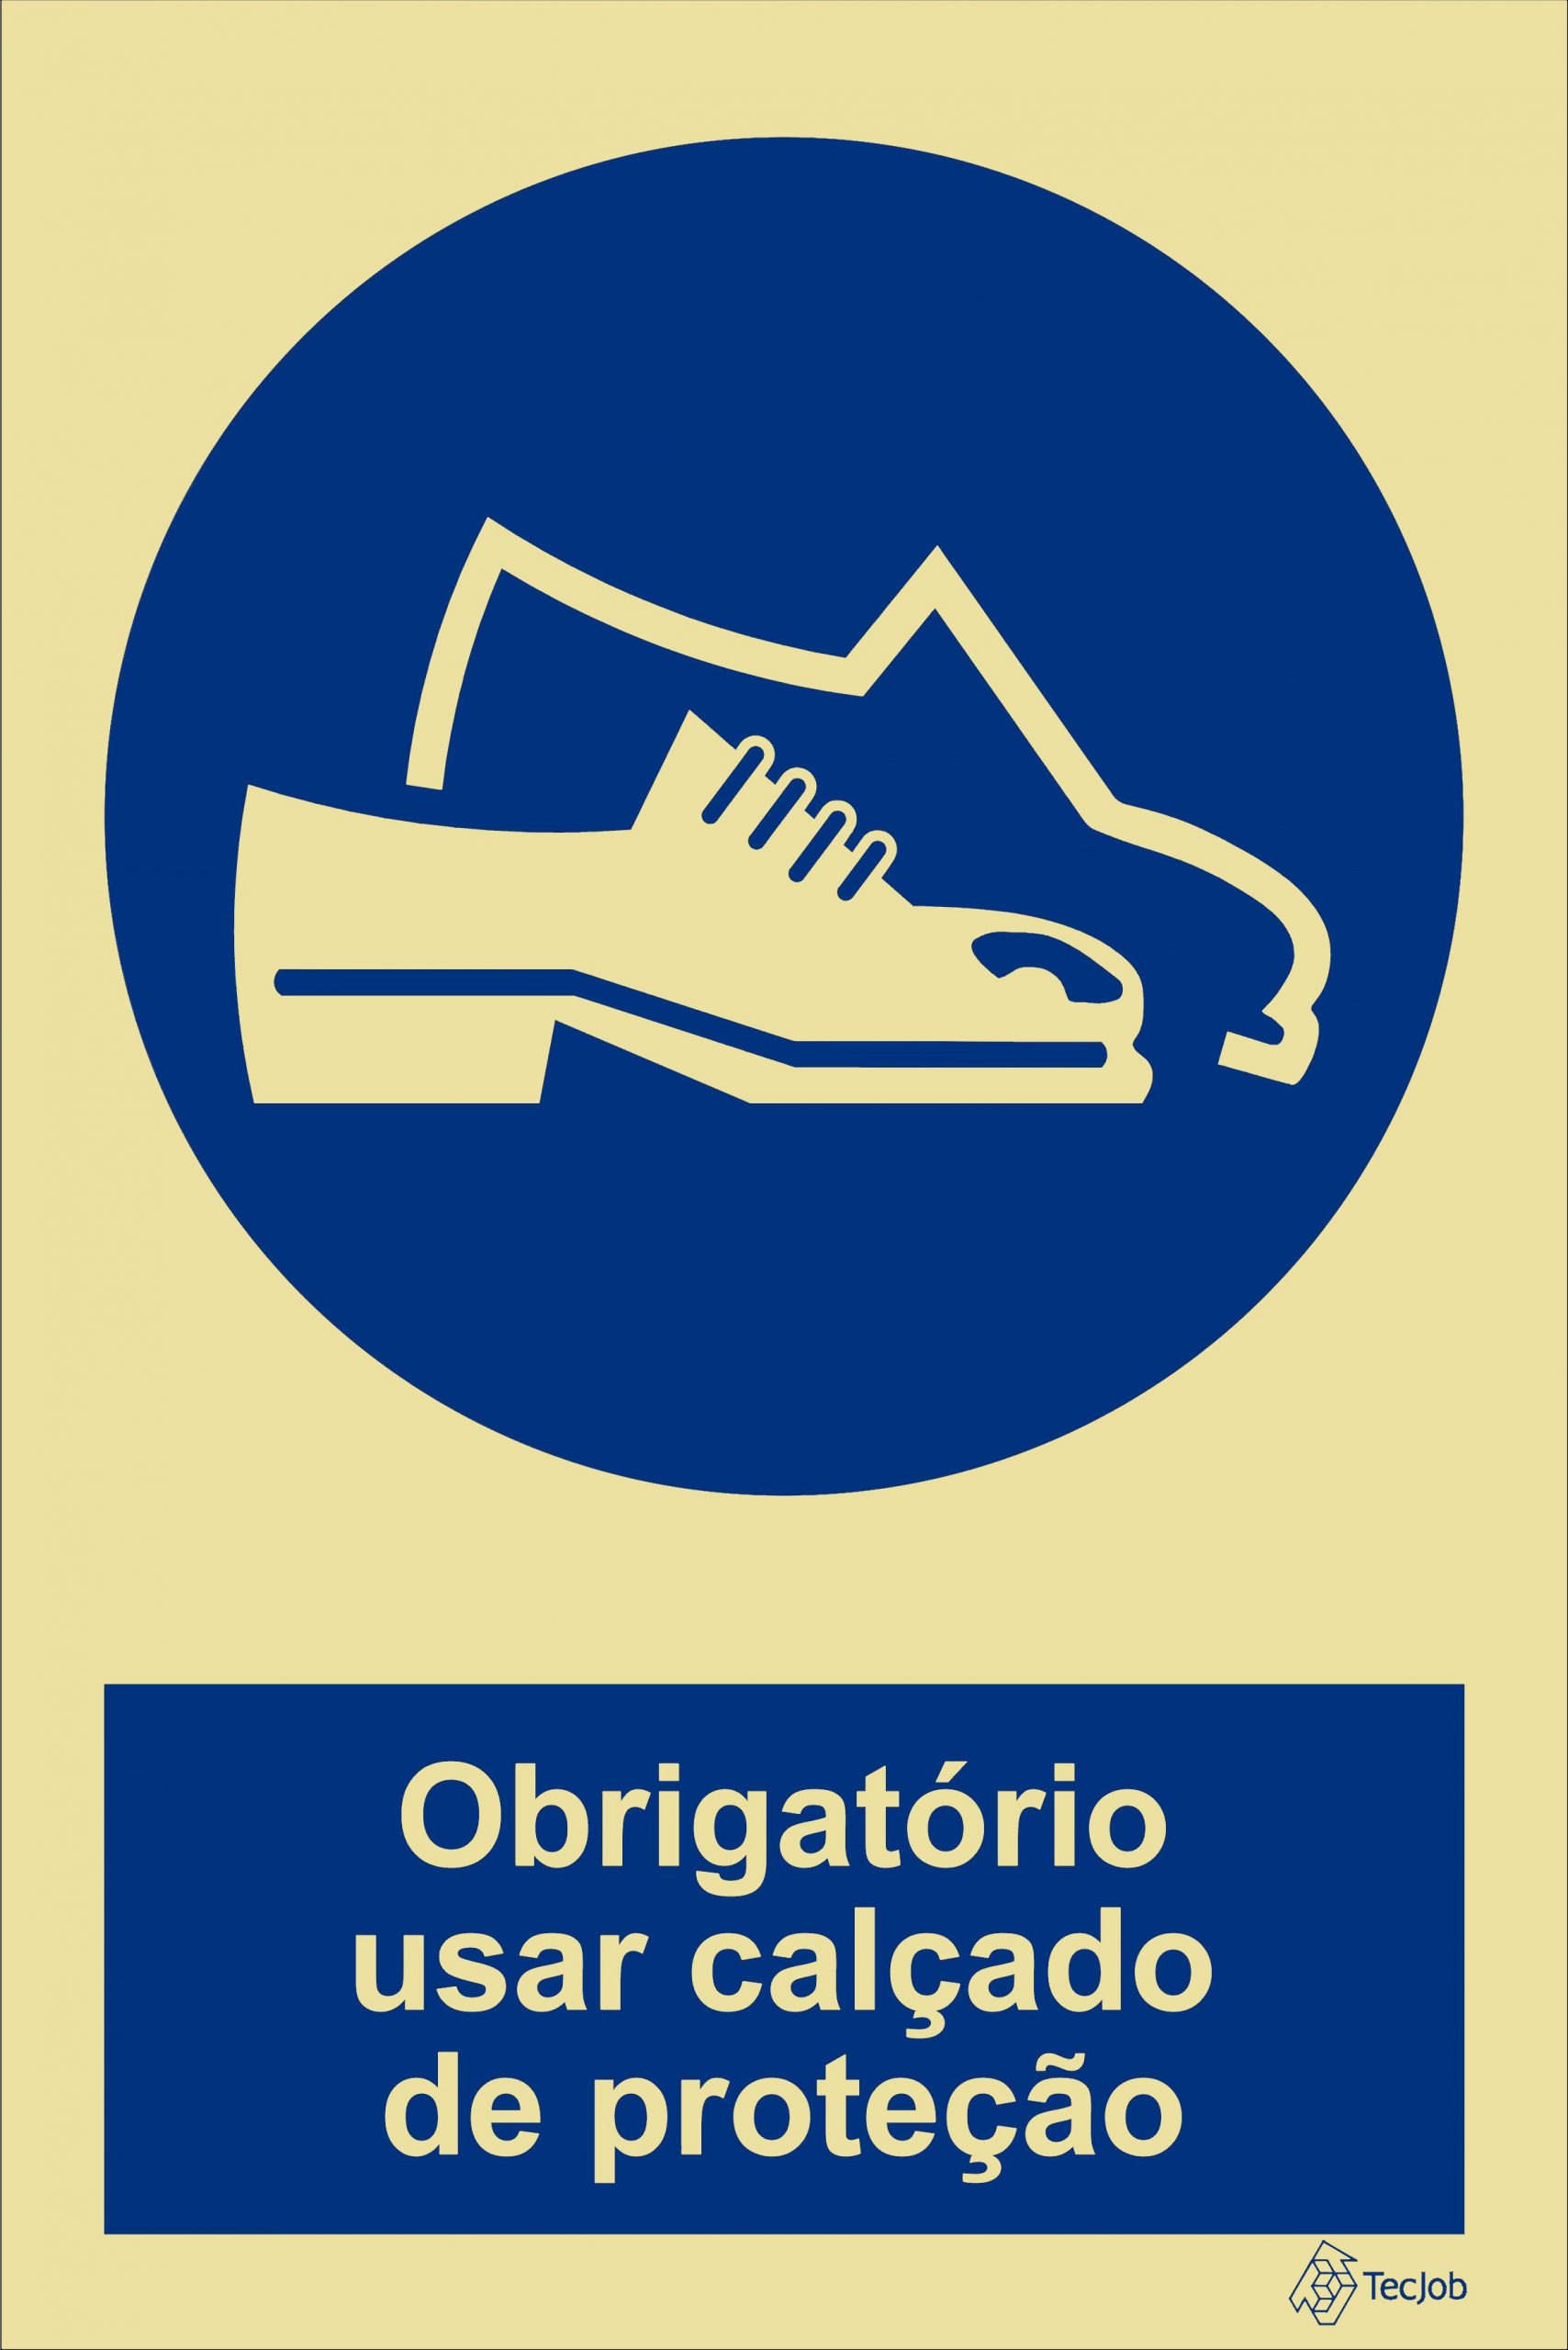 sinaletica obrigatório usar calçado de proteção OB0054